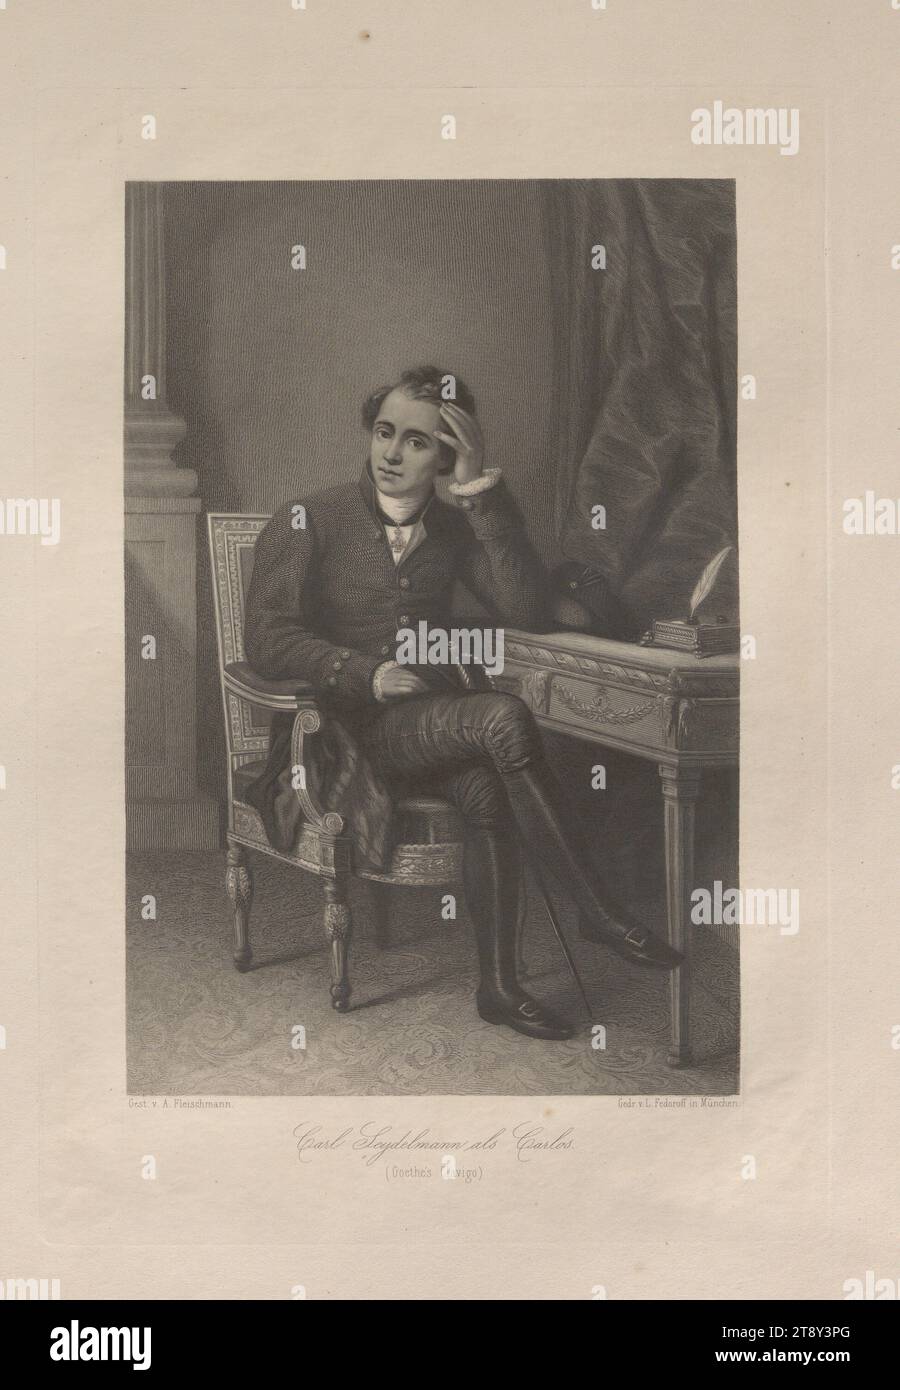 Carl Seydelmann : Carlos. (Goethe's Clavigo)', Johann Andreas Fleischmann (1811-1878), graveur sur cuivre, date avant 1878, papier, gravure sur cuivre, hauteur 39, 4 cm, largeur 28 cm, taille de plaque 32, 2×22, 1 cm, Inscription, Gest. V. A. Fleischmann.', 'Gedr. V. L. Fedoroff in München.', Beaux-Arts, Théâtre, Arts du spectacle, domaine Constantin von Wurzbach, portrait, homme, portrait d'acteur, actrice, acteur (sur scène), The Vienna Collection Banque D'Images